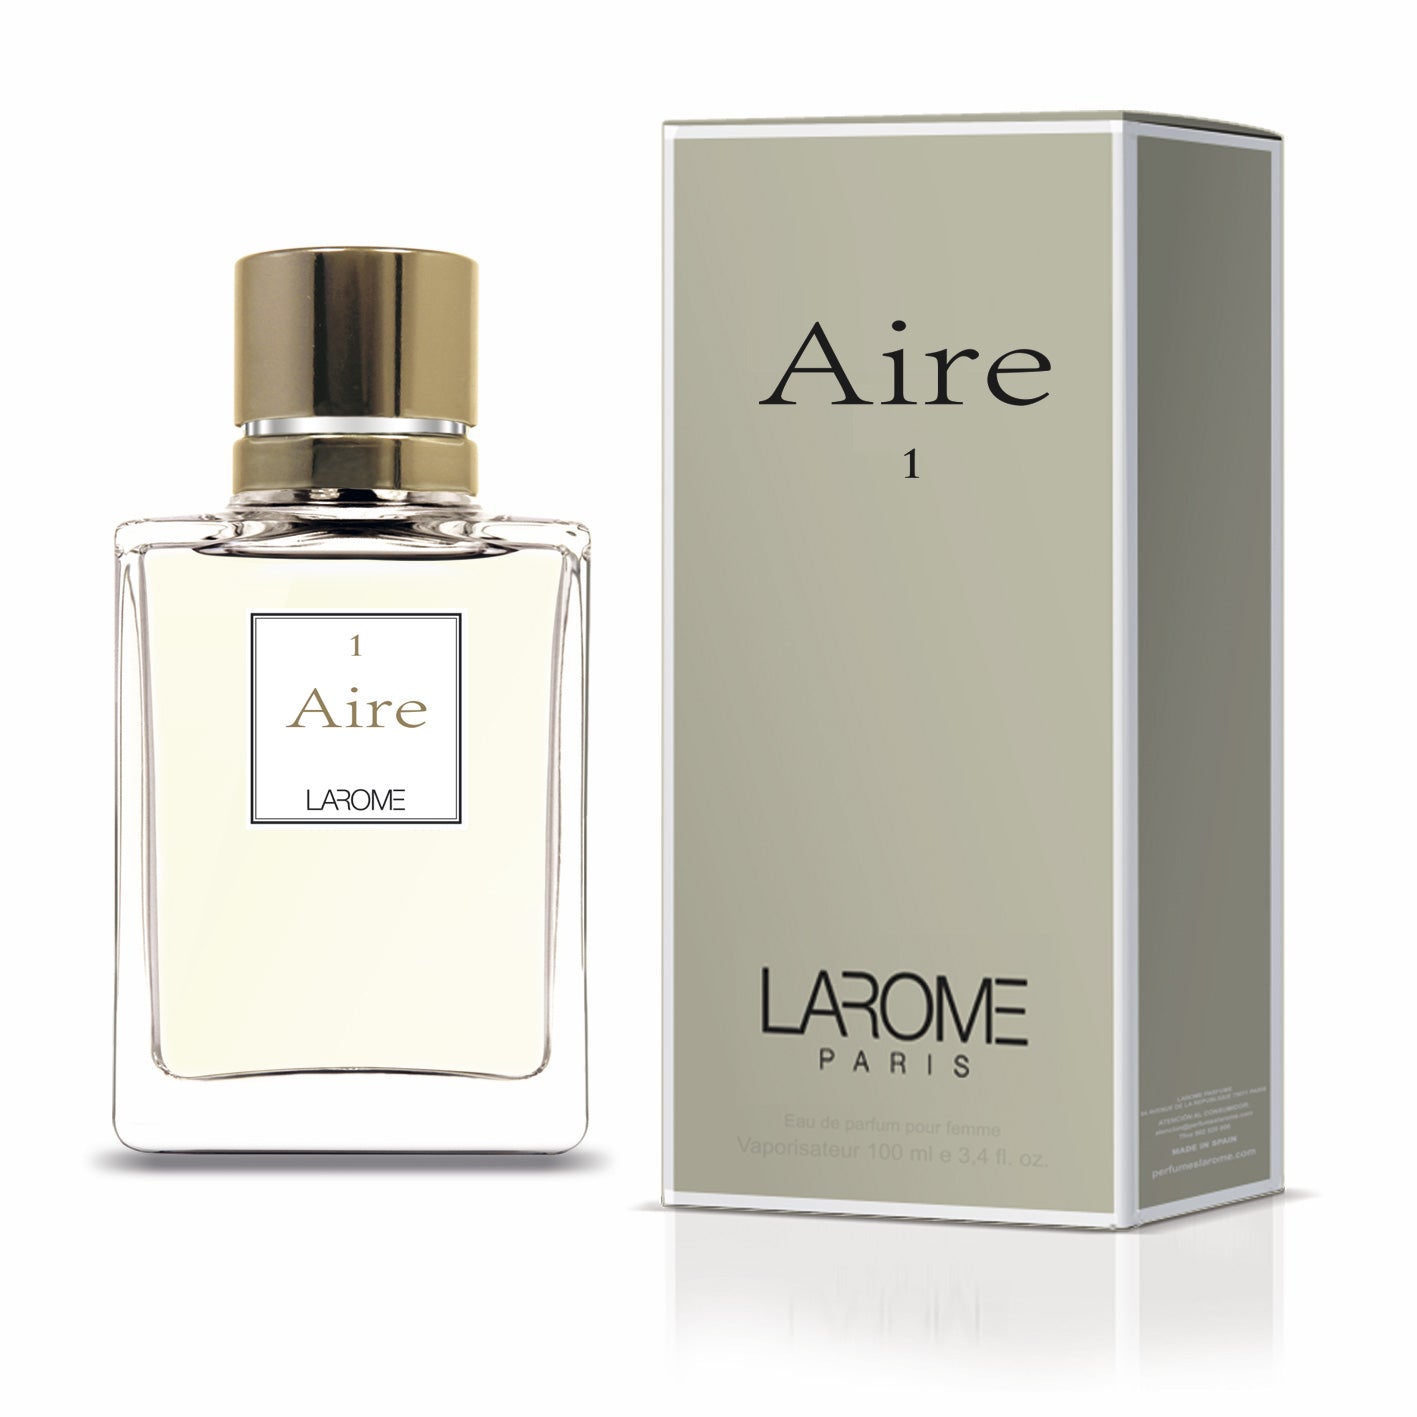 AIRE 1F by Larome geïnspireerd door Aire de Loewe